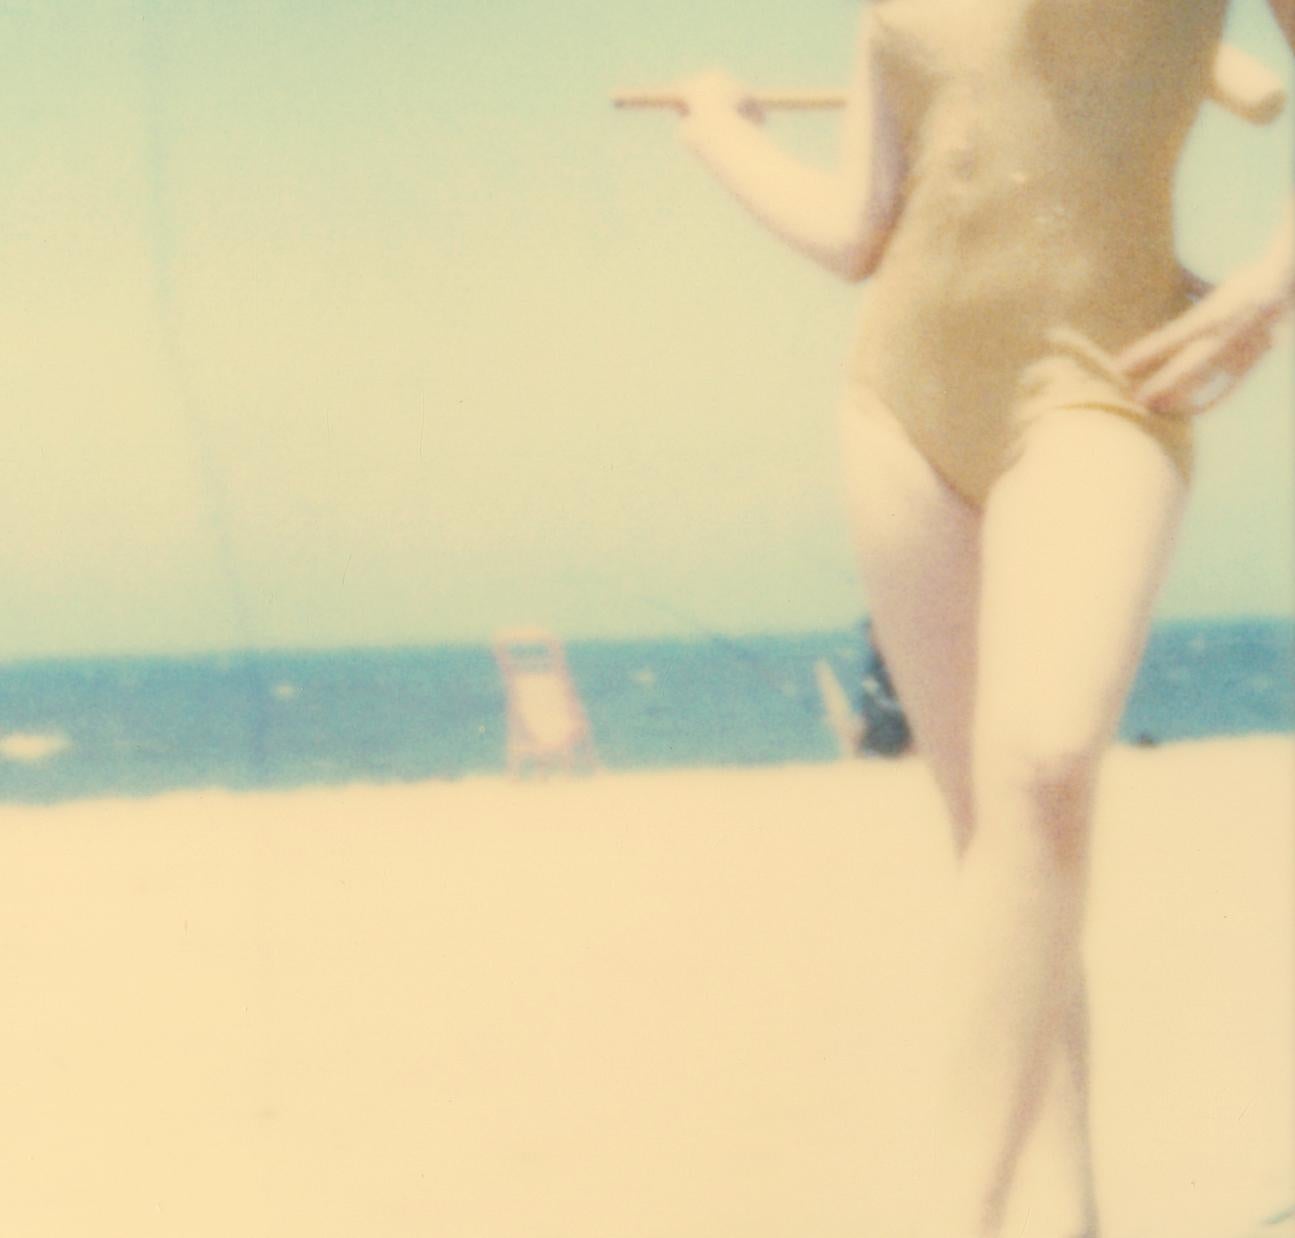 Untitled (Beachshoot) - analog, Polaroid, hand-print, vintage - Photograph by Stefanie Schneider